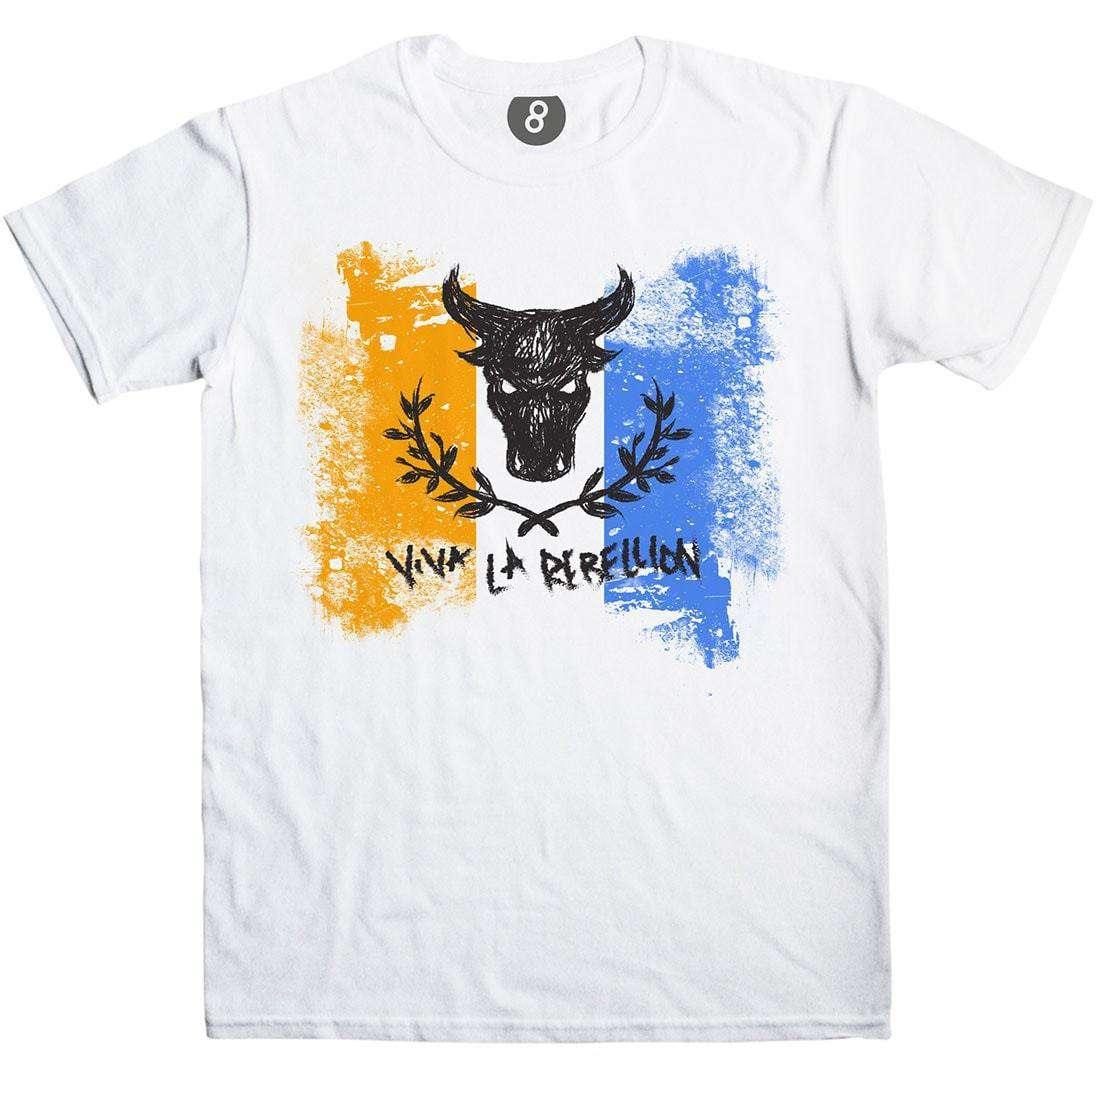 Viva La Rebellion Graphic T-Shirt For Men 8Ball